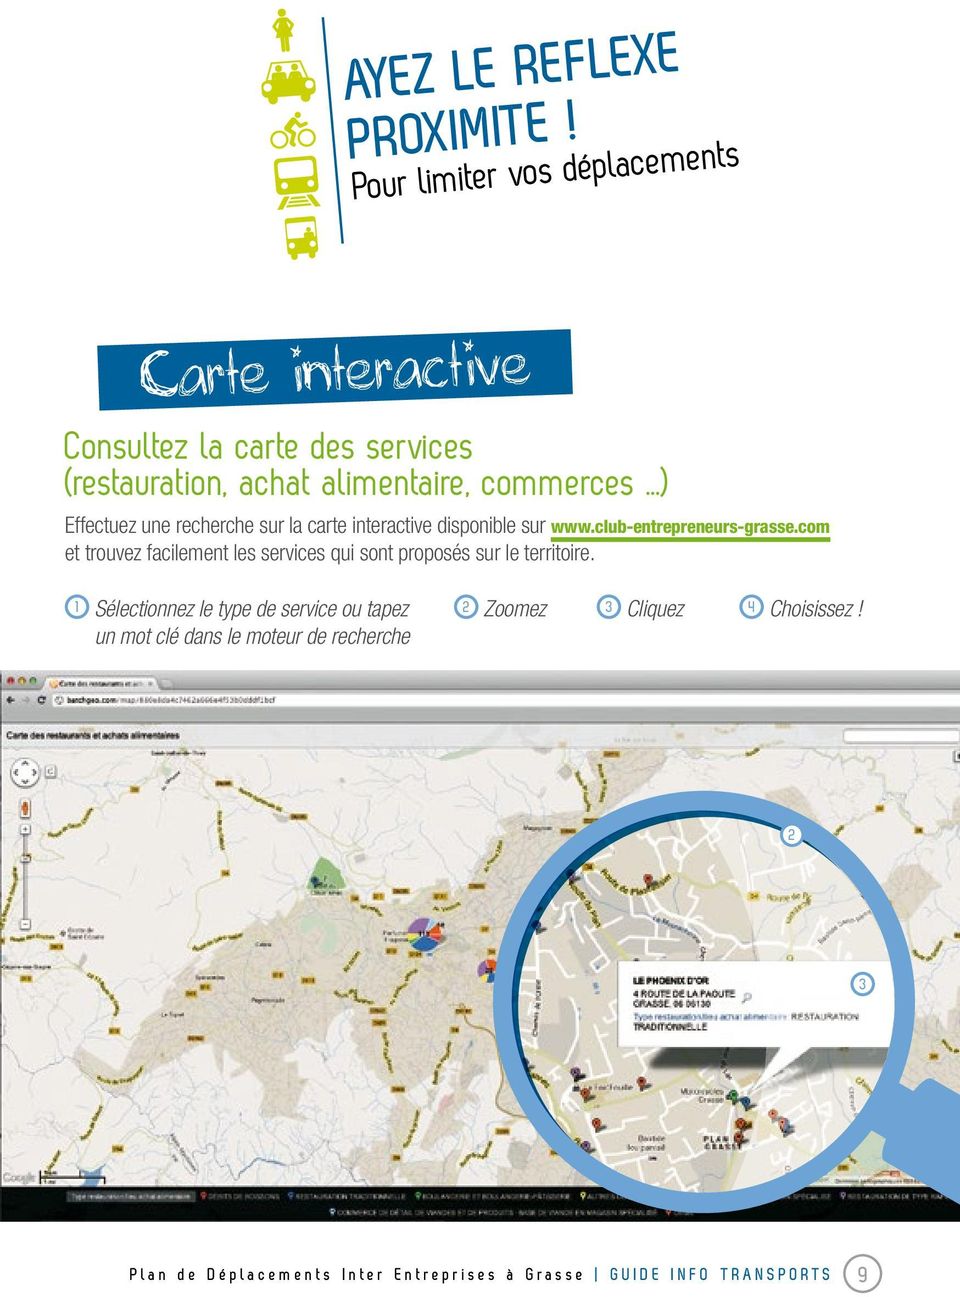 Effectuez une recherche sur la carte interactive disponible sur www.club-entrepreneurs-grasse.